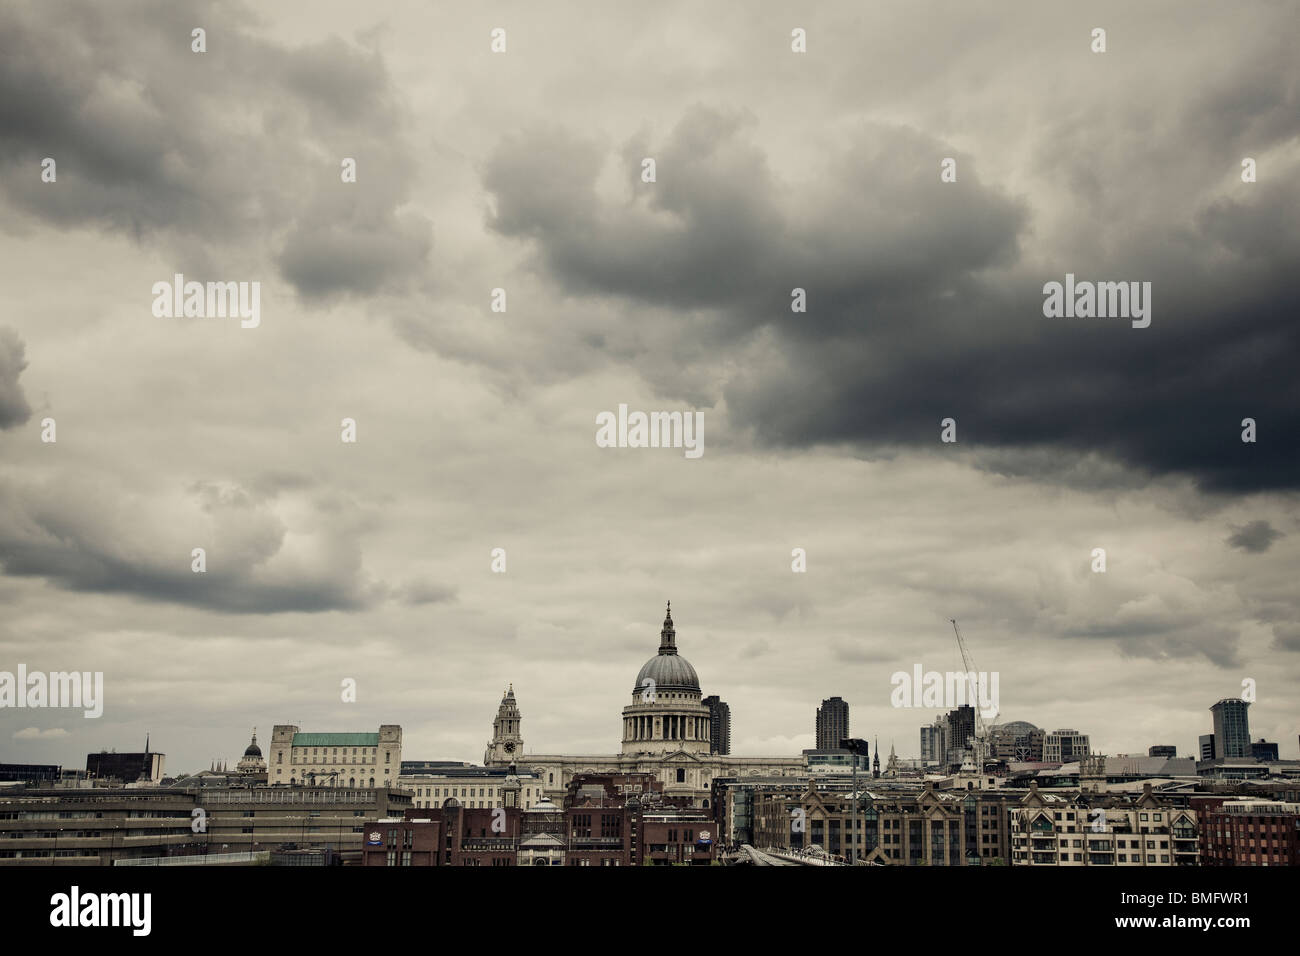 Panoramablick über die Skyline von London wie St. Pauls Kathedrale Kunstgalerie Tate Modern unter schwarzem Gewitterhimmel 2010 entnommen Stockfoto